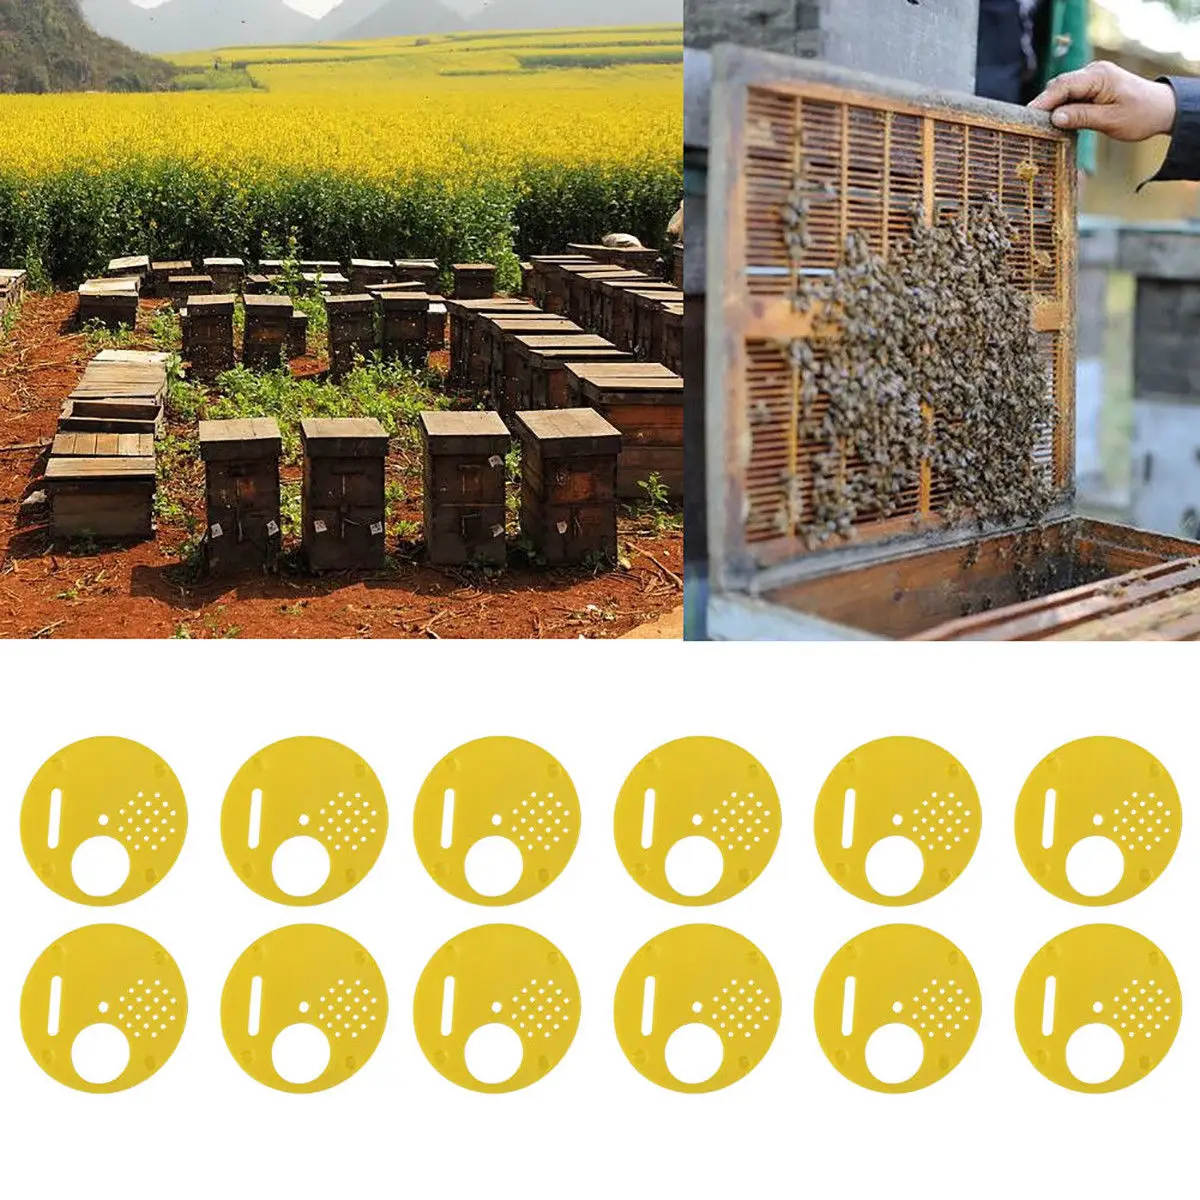 Шт. 12 шт. пластиковые пчеловоды пчелиный улей ядро входные ворота пчеловодство оборудование для улей пчелы и улей желтый